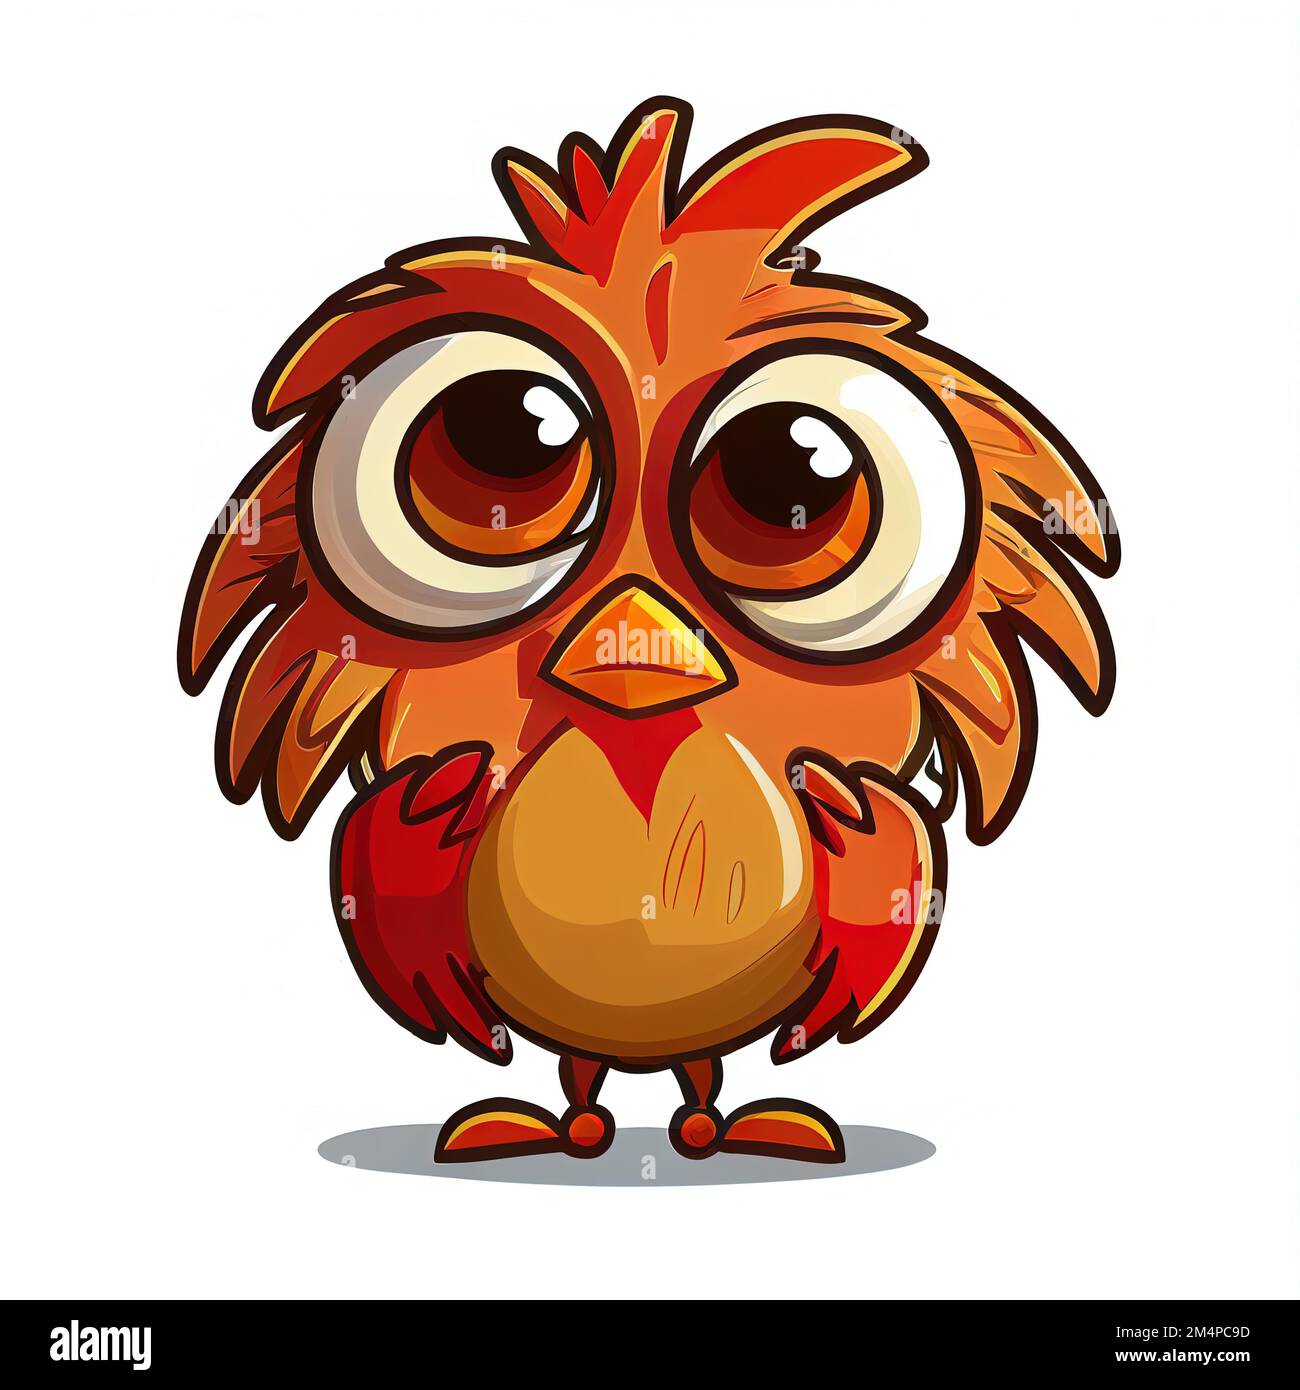 a cartoon bird with big eyes and a big nose Stock Photo - Alamy